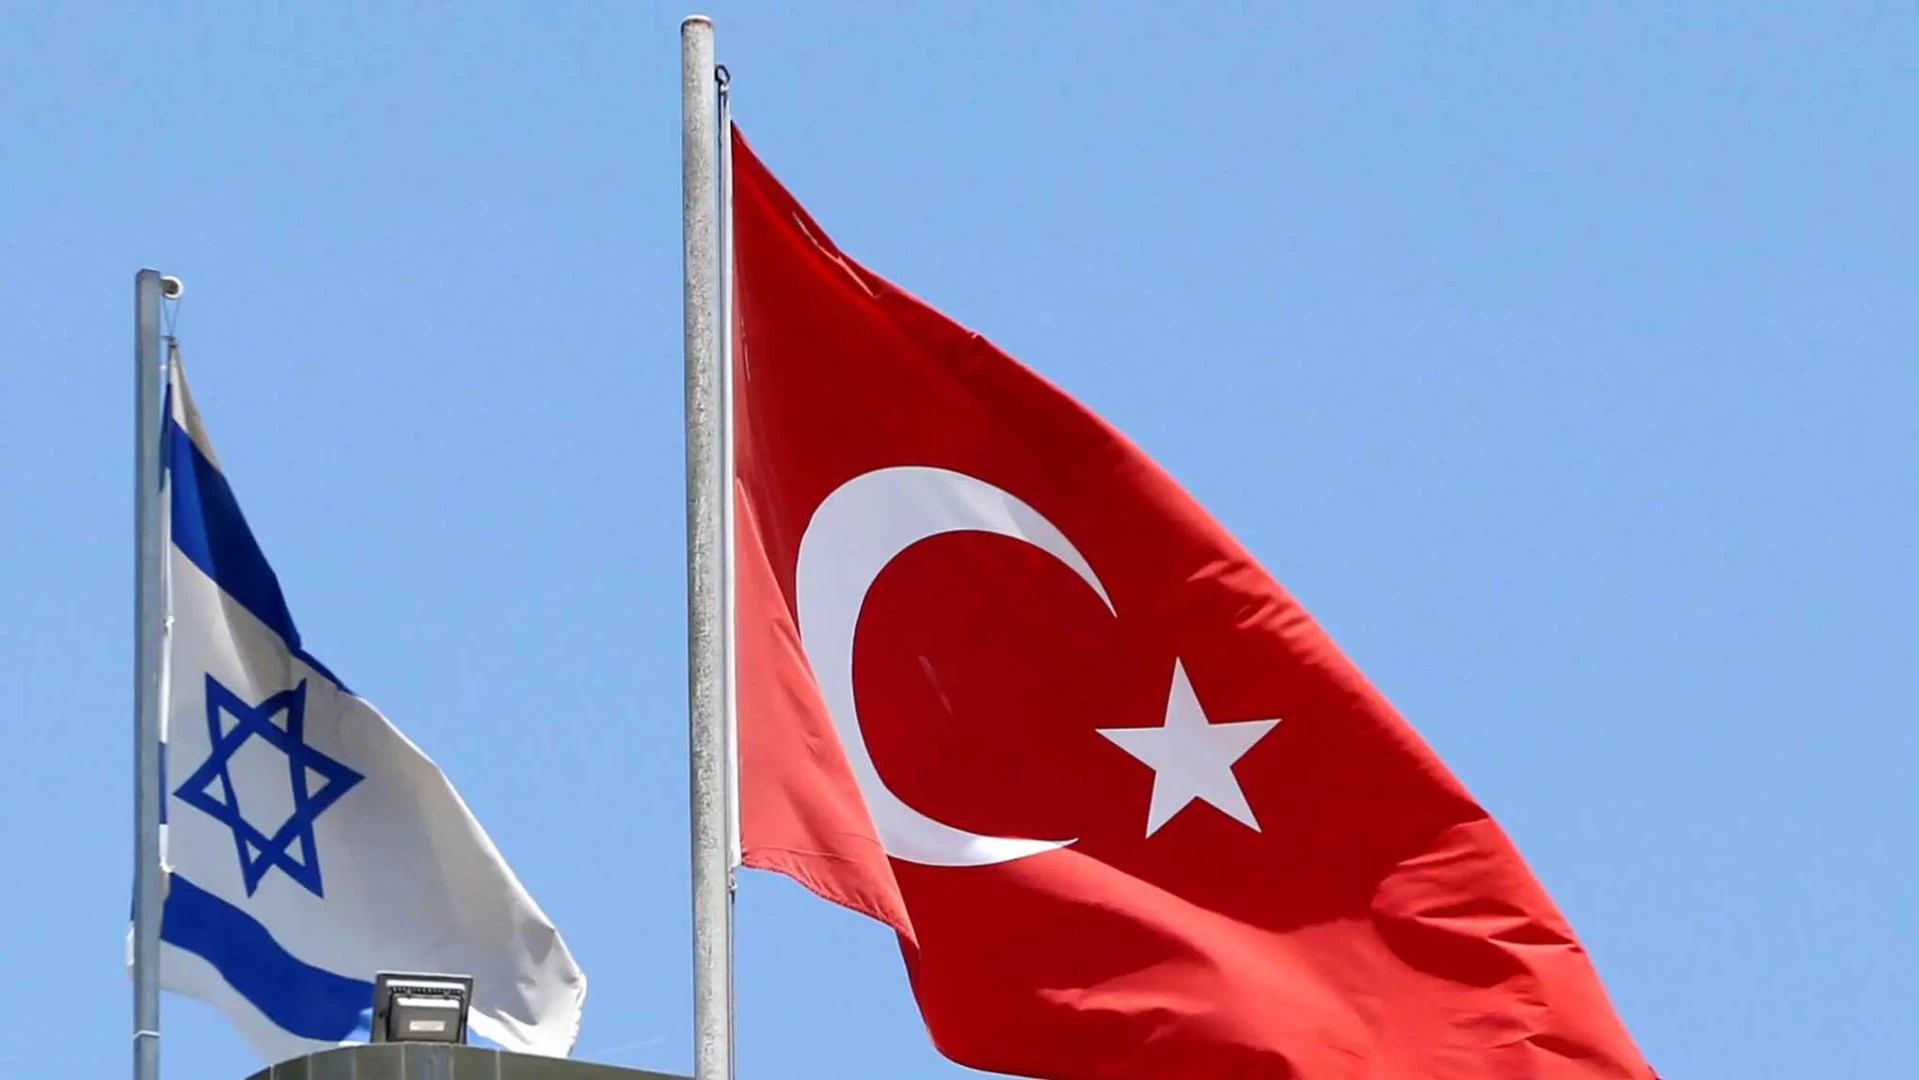 إسرائيل تقارن أردوغان بصدام حسين وتركيا تصف نهاية نتنياهو بهتلر